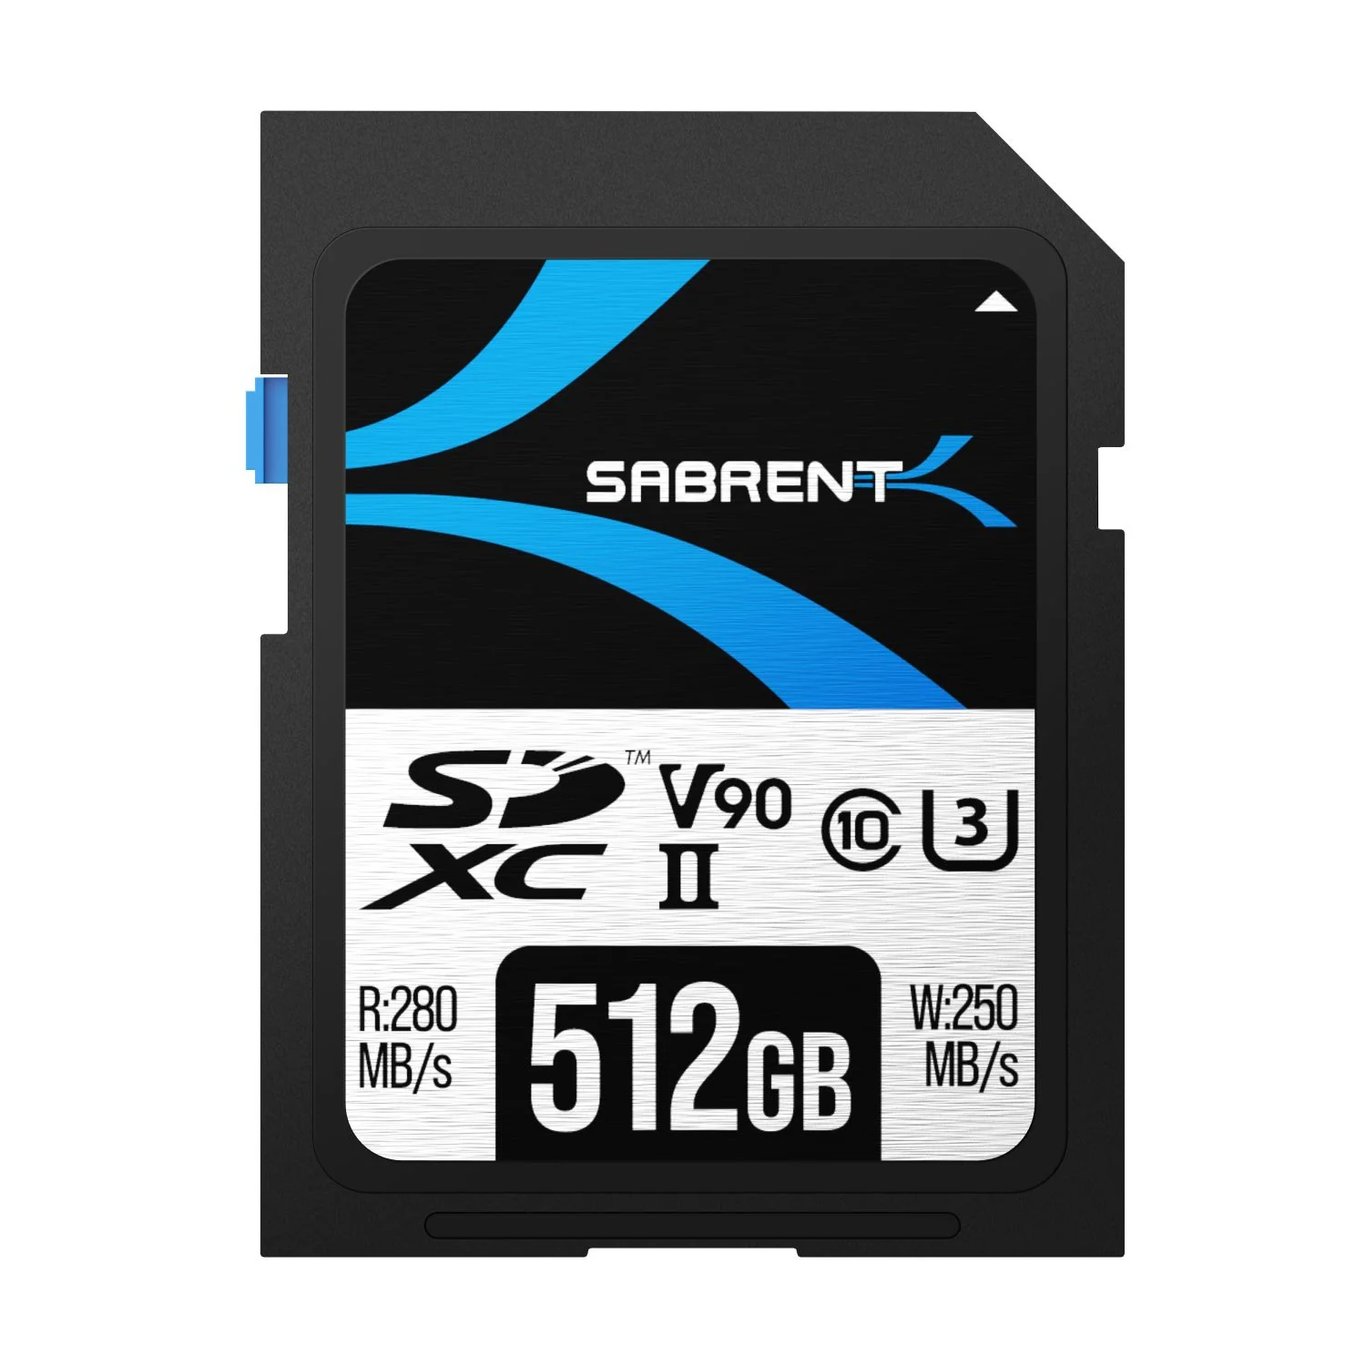 SABRENT Rocket v90 SD UHS-II Memory Card 512GB